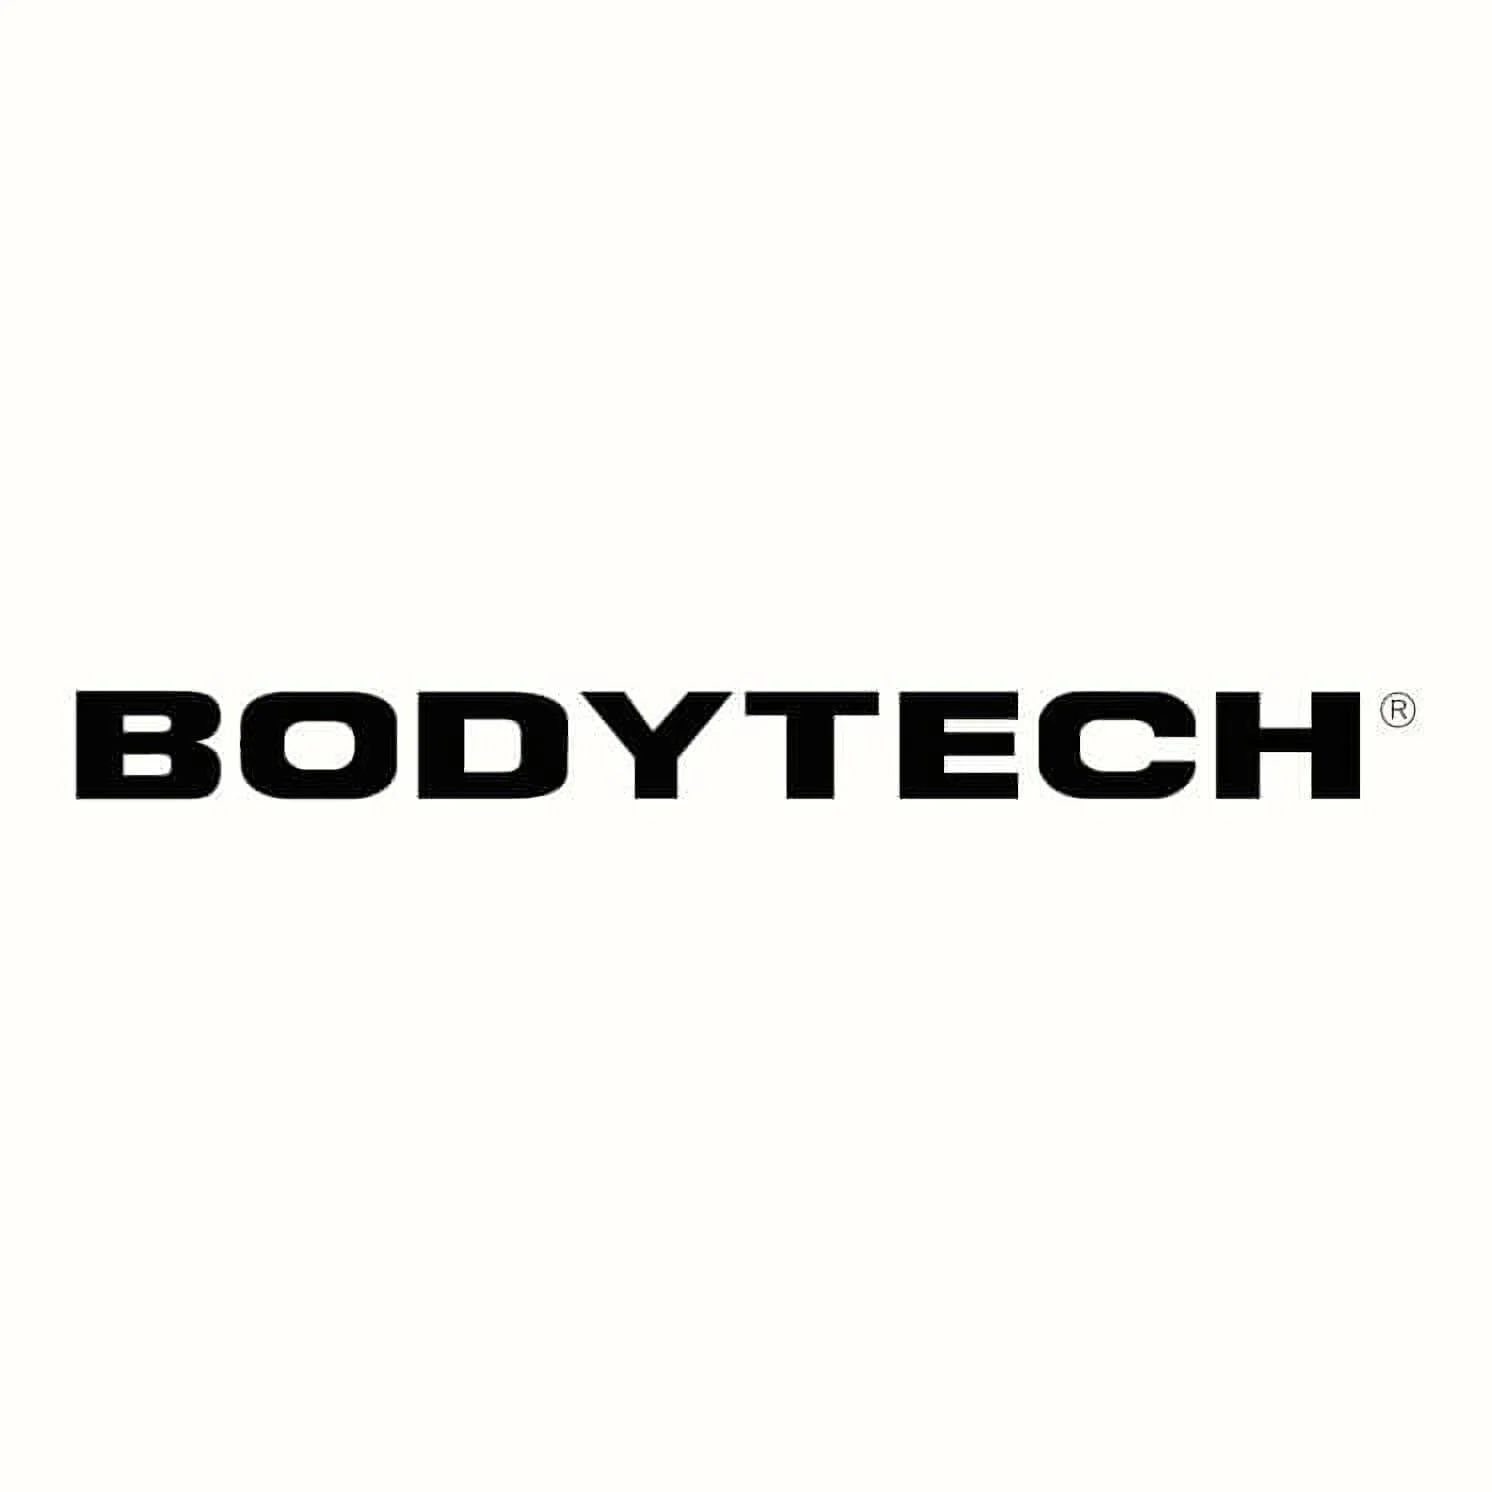 Bodytech Recreo-2339